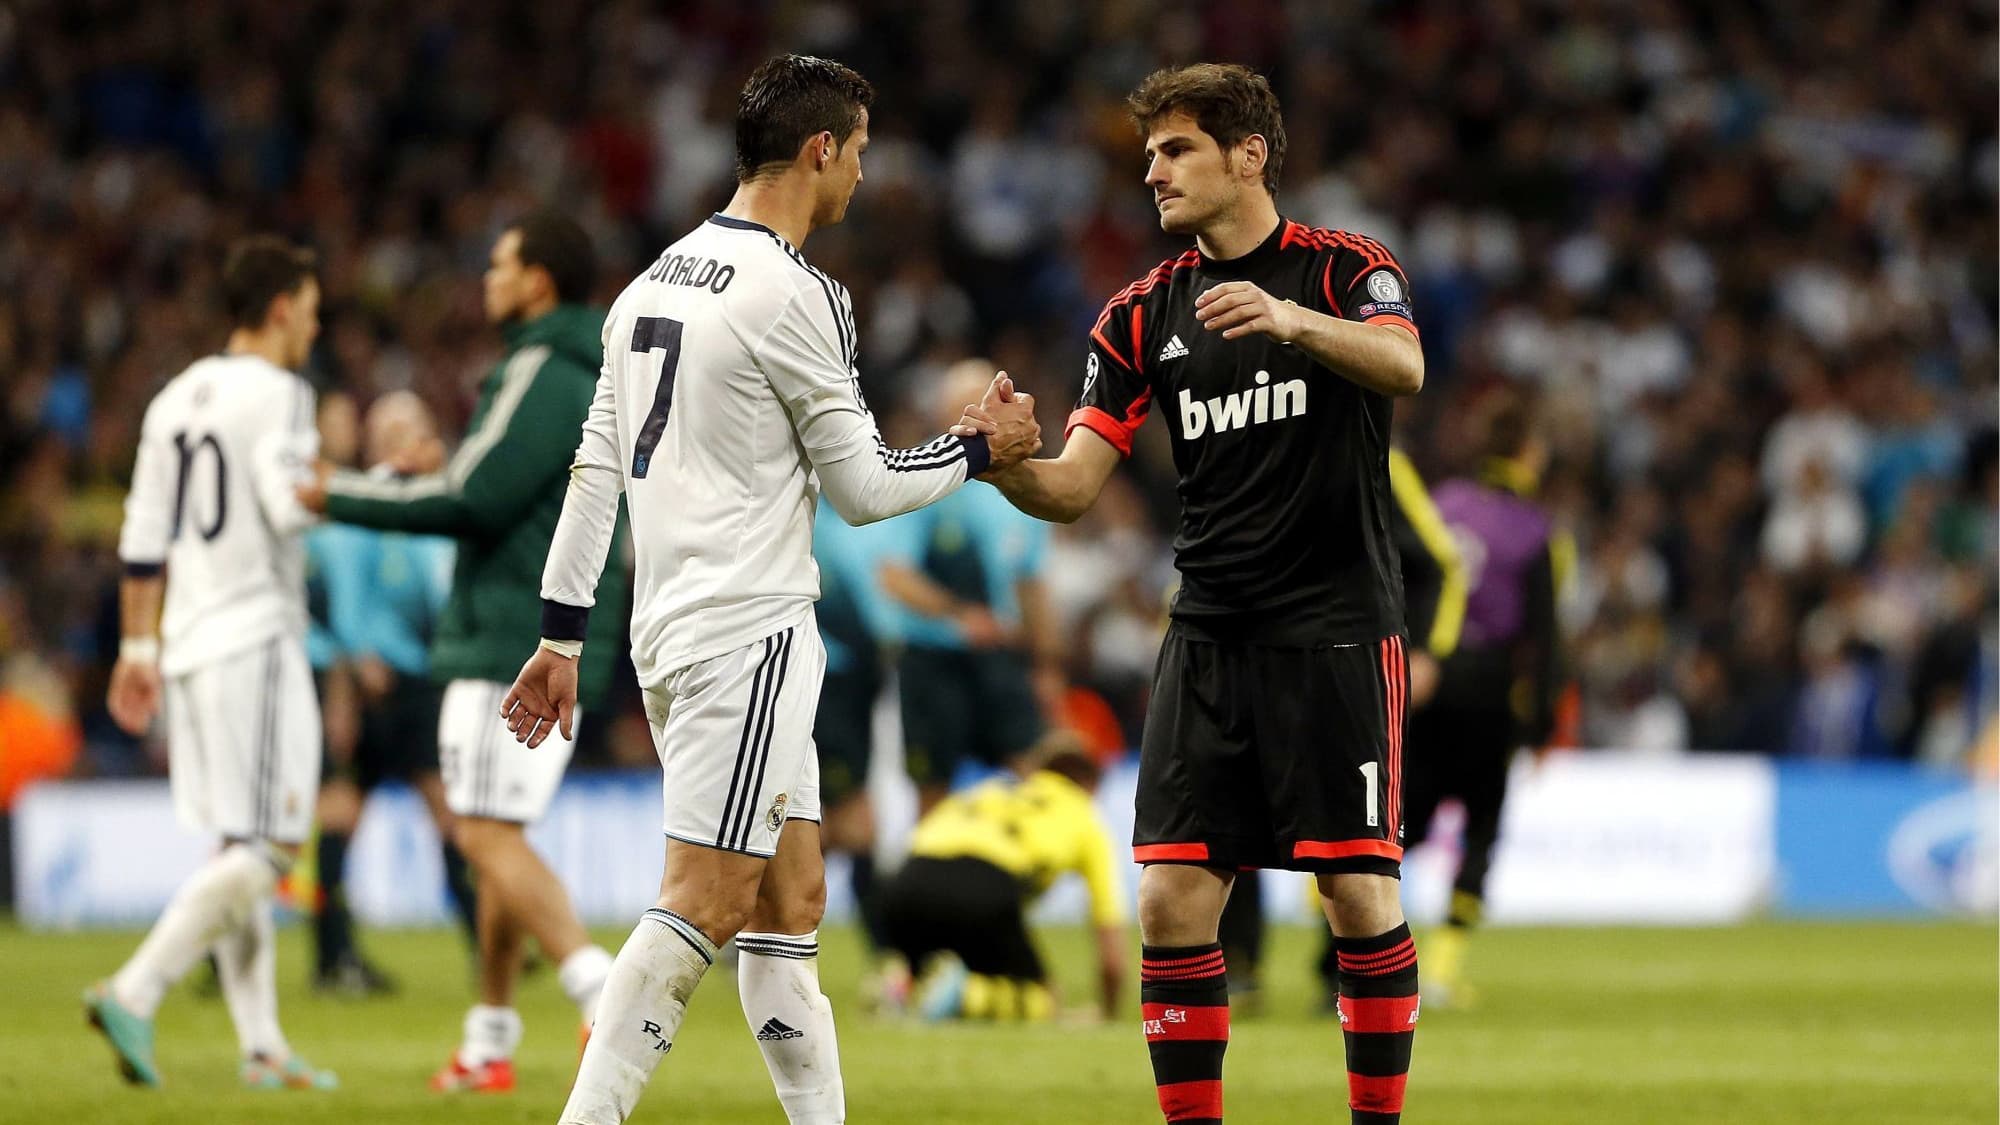 Casillas defends his former teammate